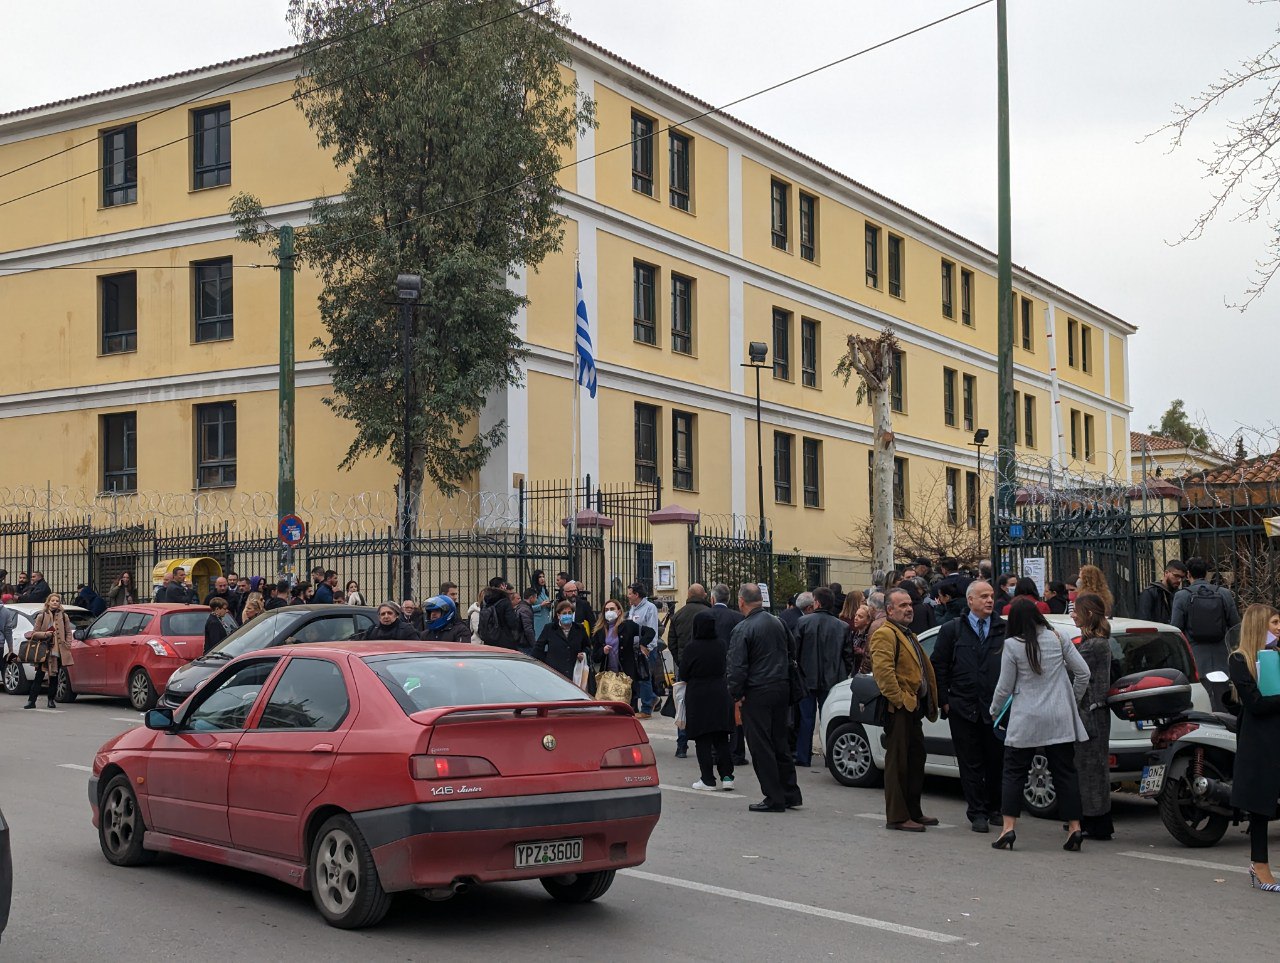 Τηλεφώνημα για βόμβα στην Ευελπίδων - Εκκενώνονται τα δικαστήρια